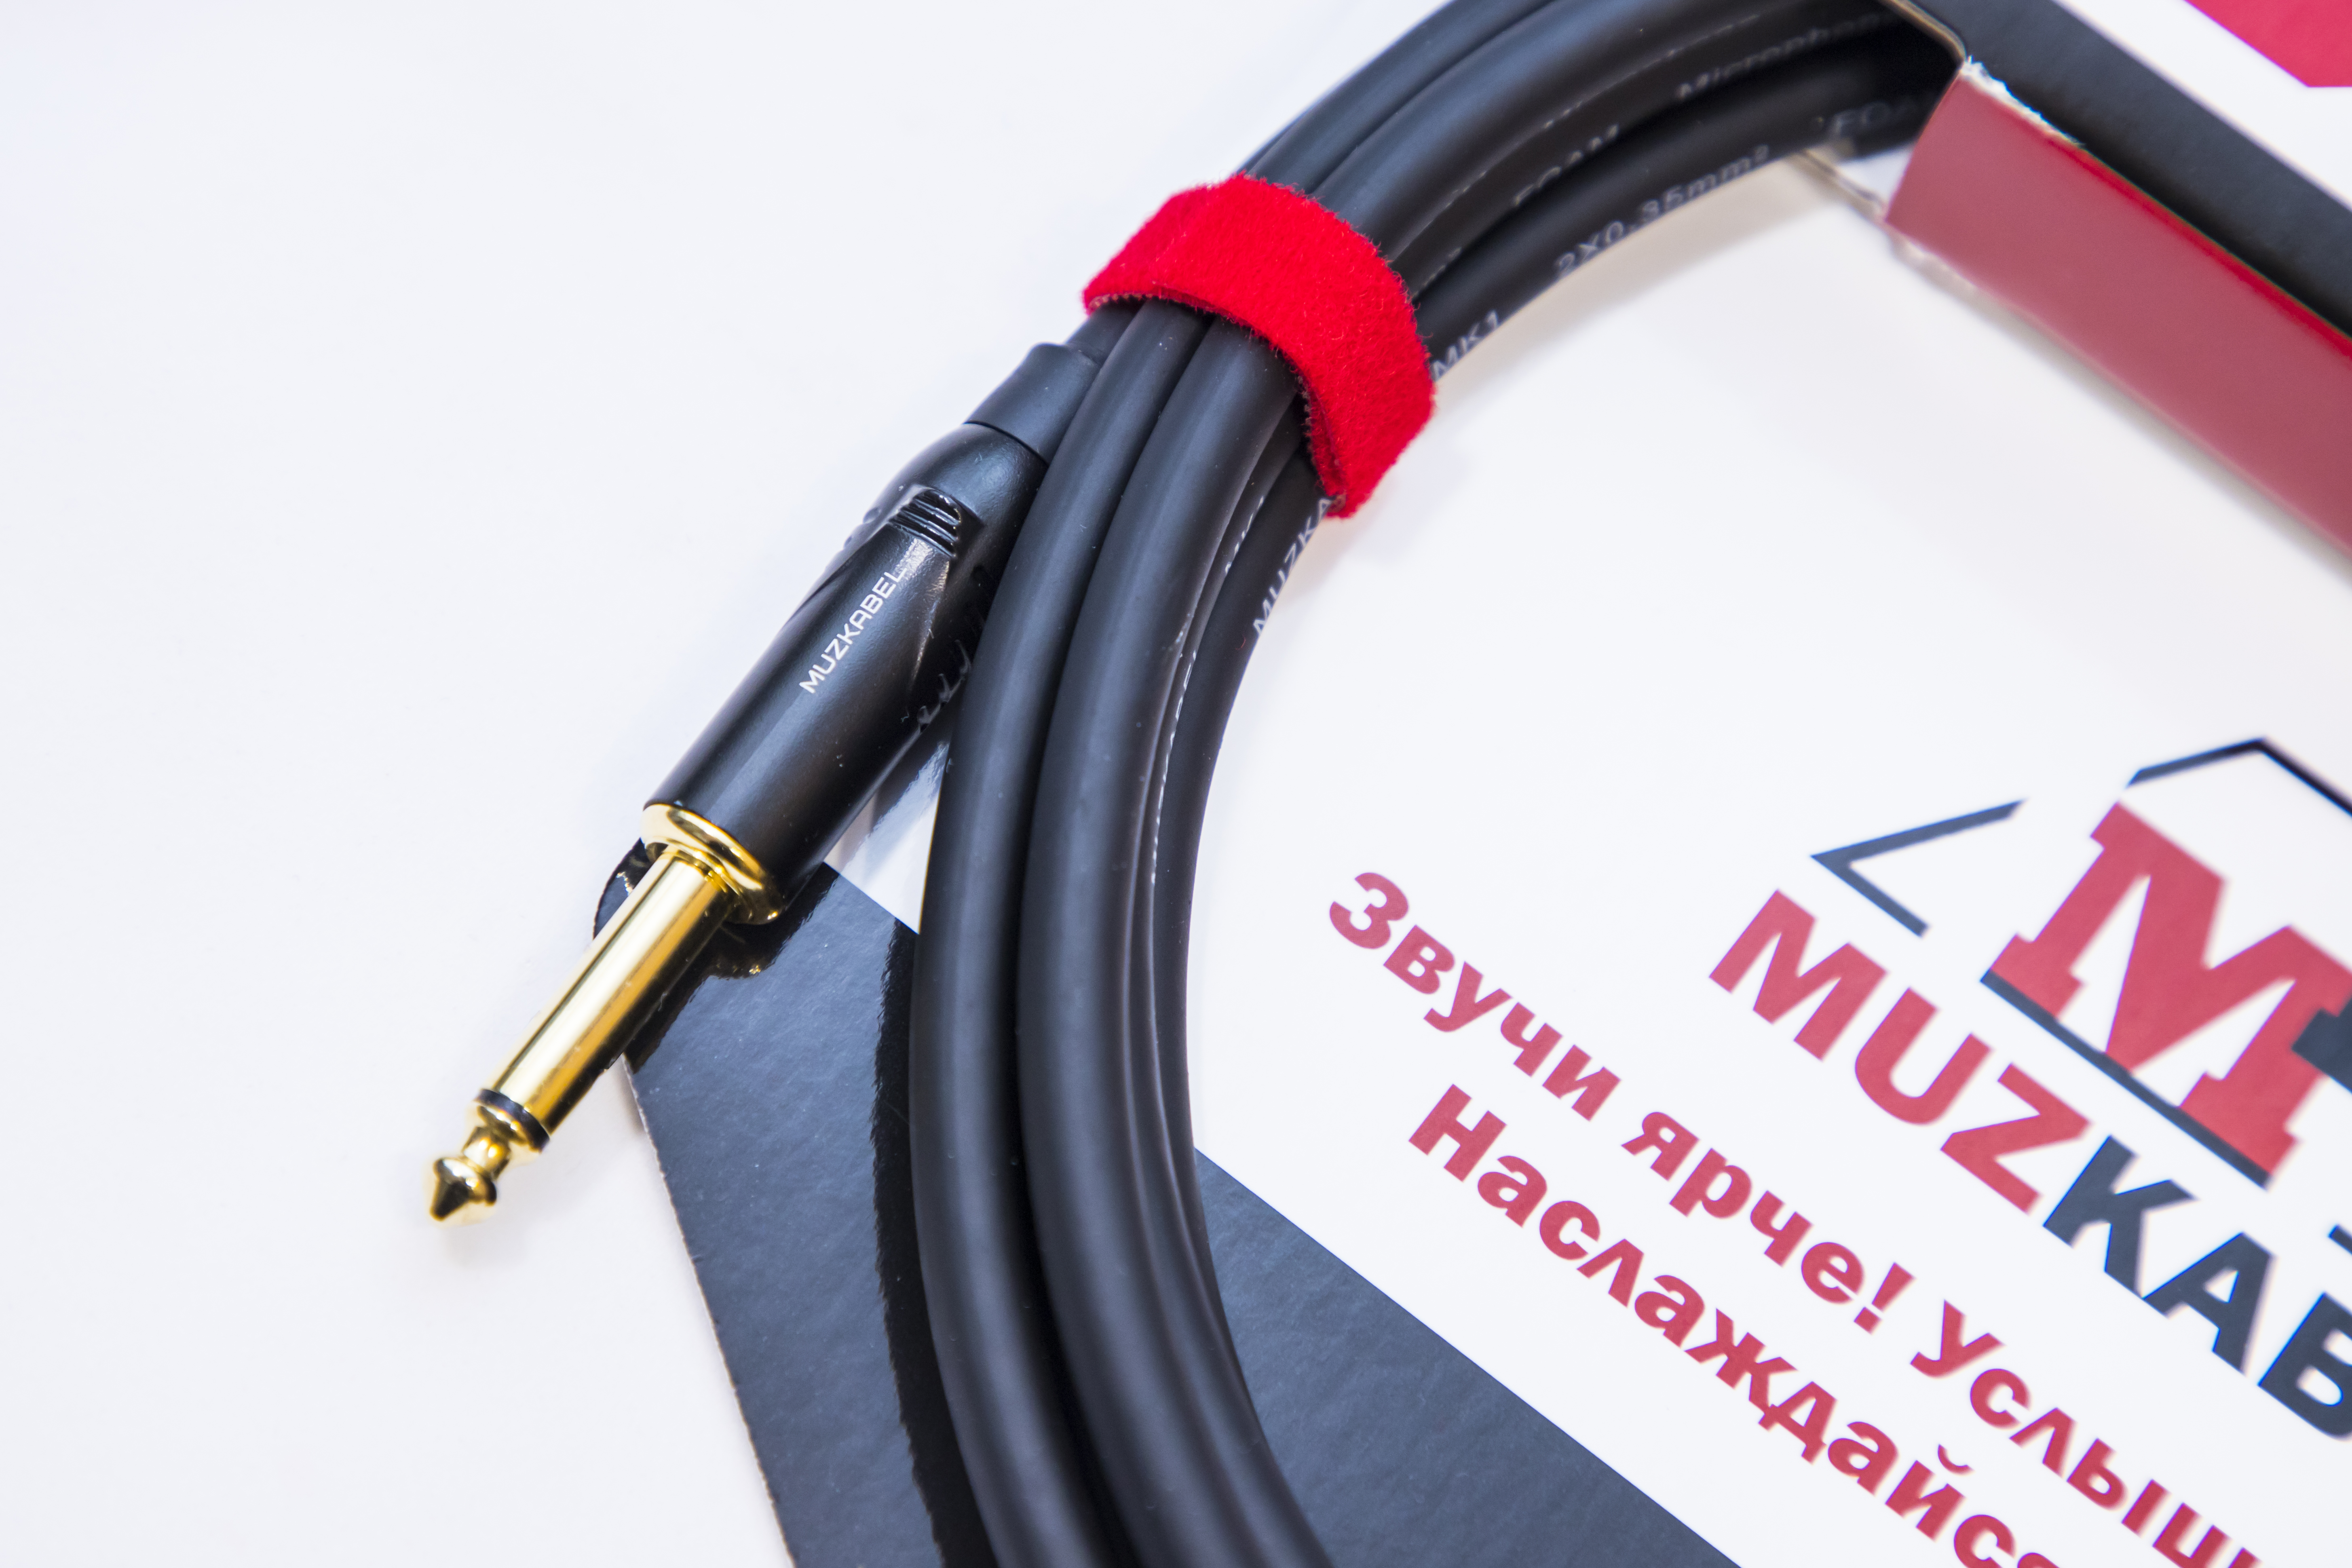 Гитарный кабель MUZKABEL FJSIK4B - 1 метр, JACK (моно) - XLR (папа)